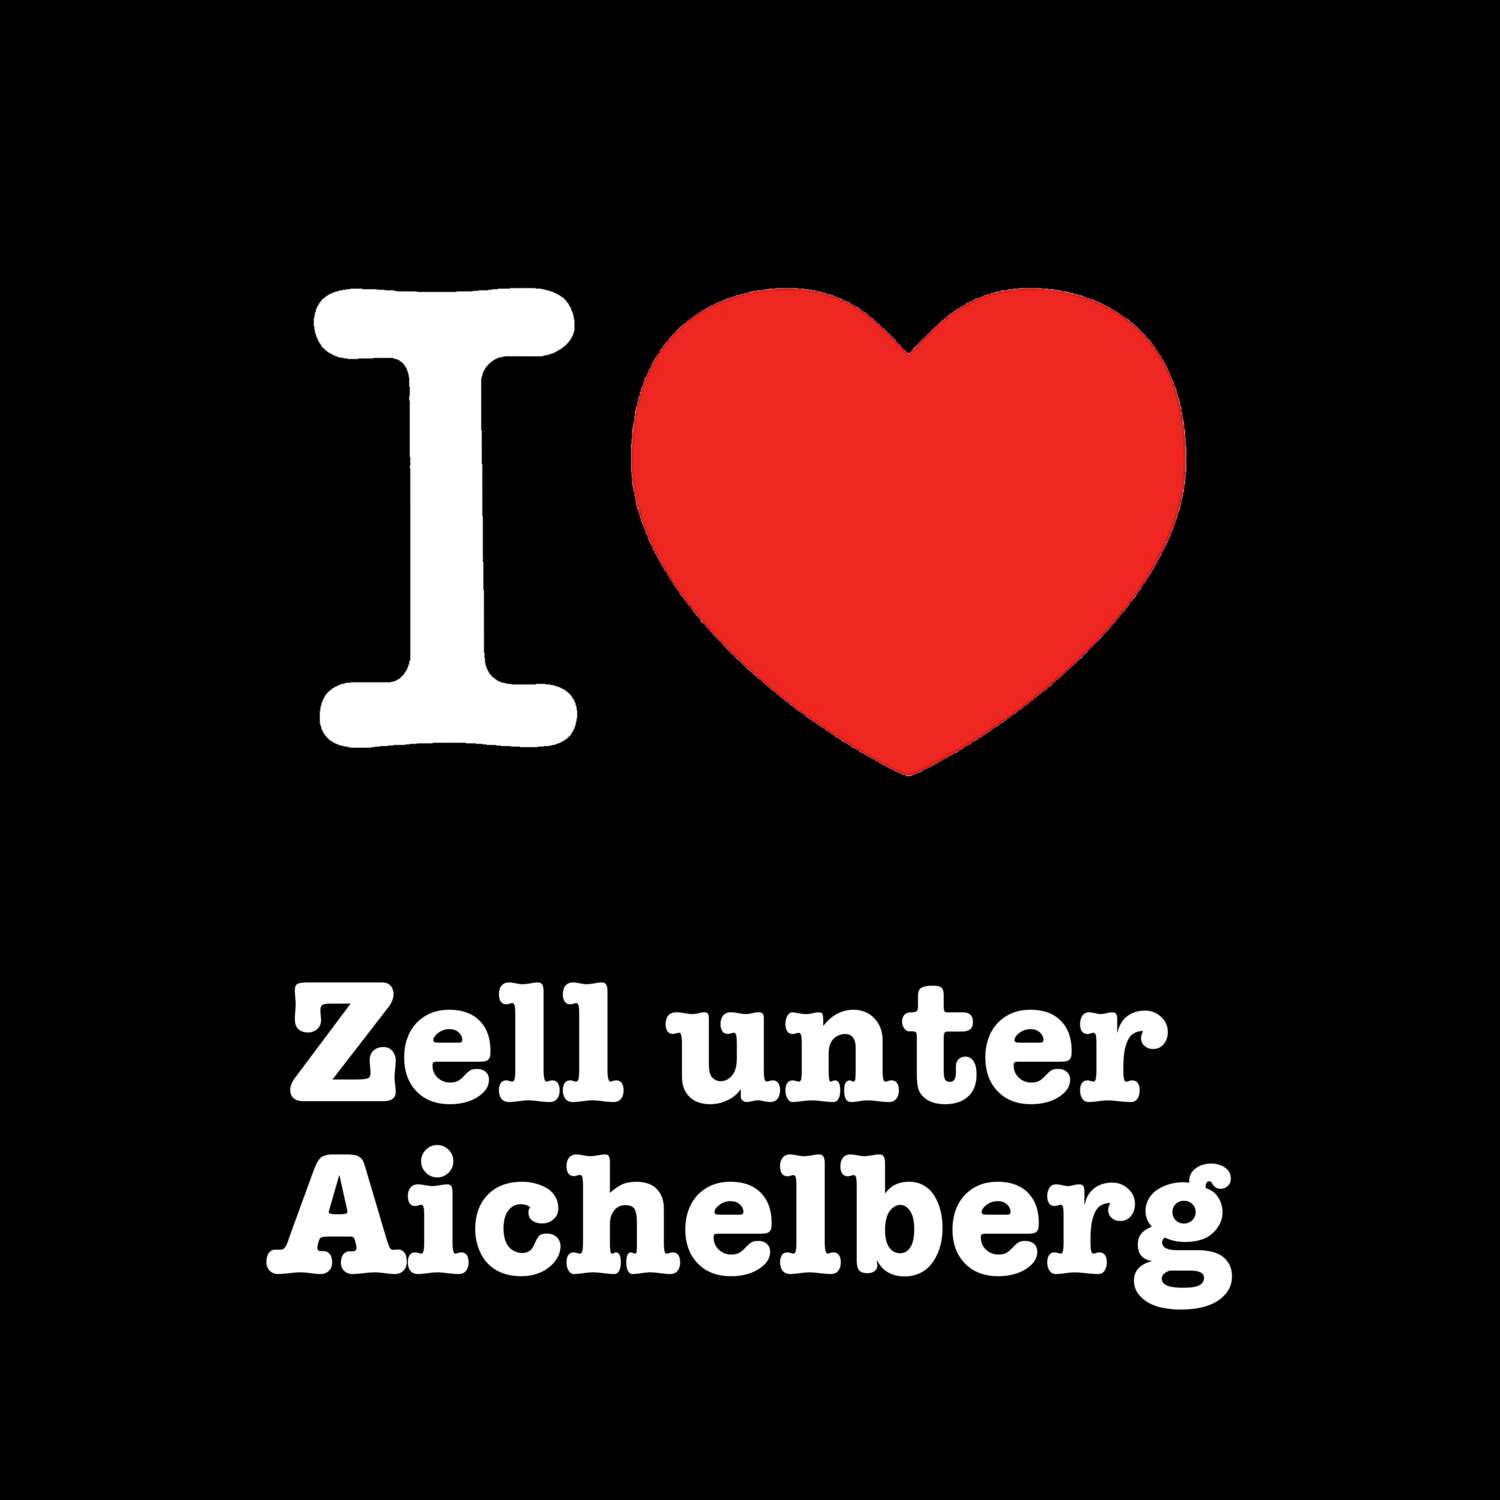 Zell unter Aichelberg T-Shirt »I love«